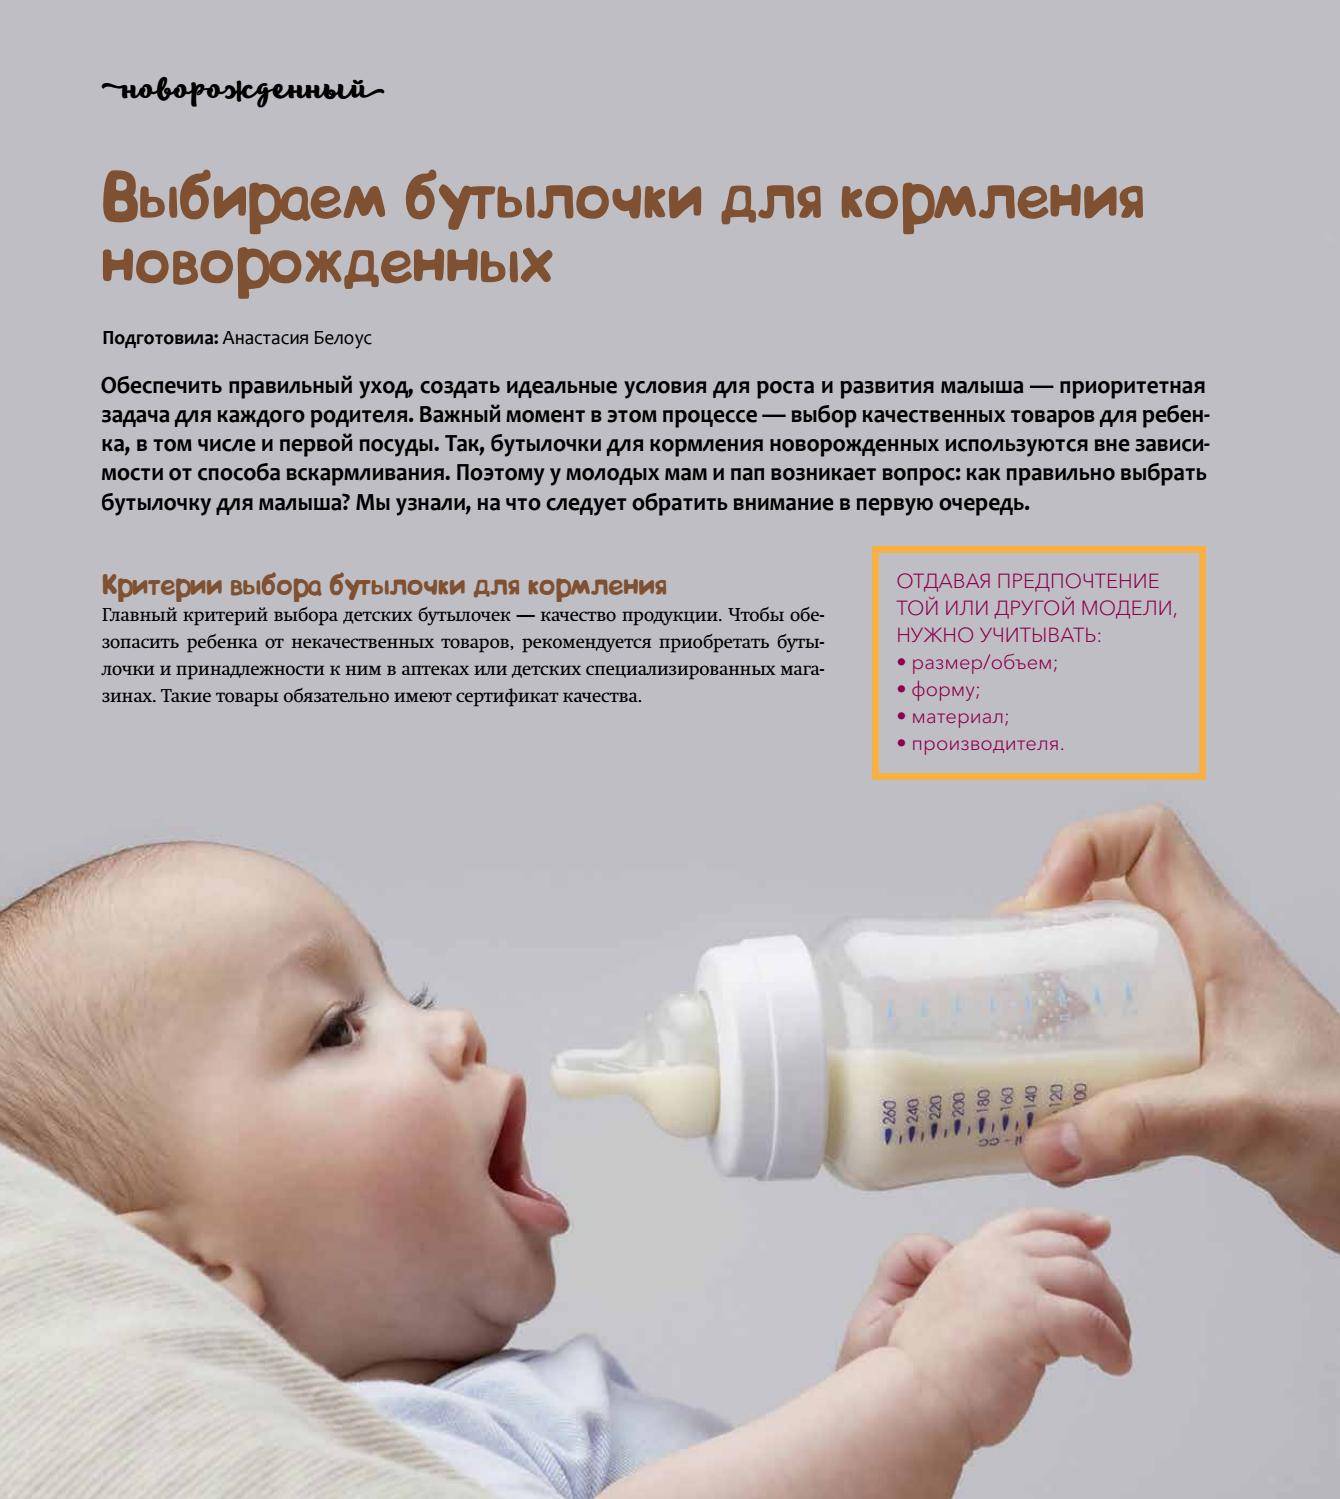 Кормим смесью почему. Как правильно держать новорожденного при кормлении из бутылочки. Как нужно правильно кормить новорожденного смесью из бутылочки. Положение для кормления из бутылочки. Кормление из бутылки грудникчк.